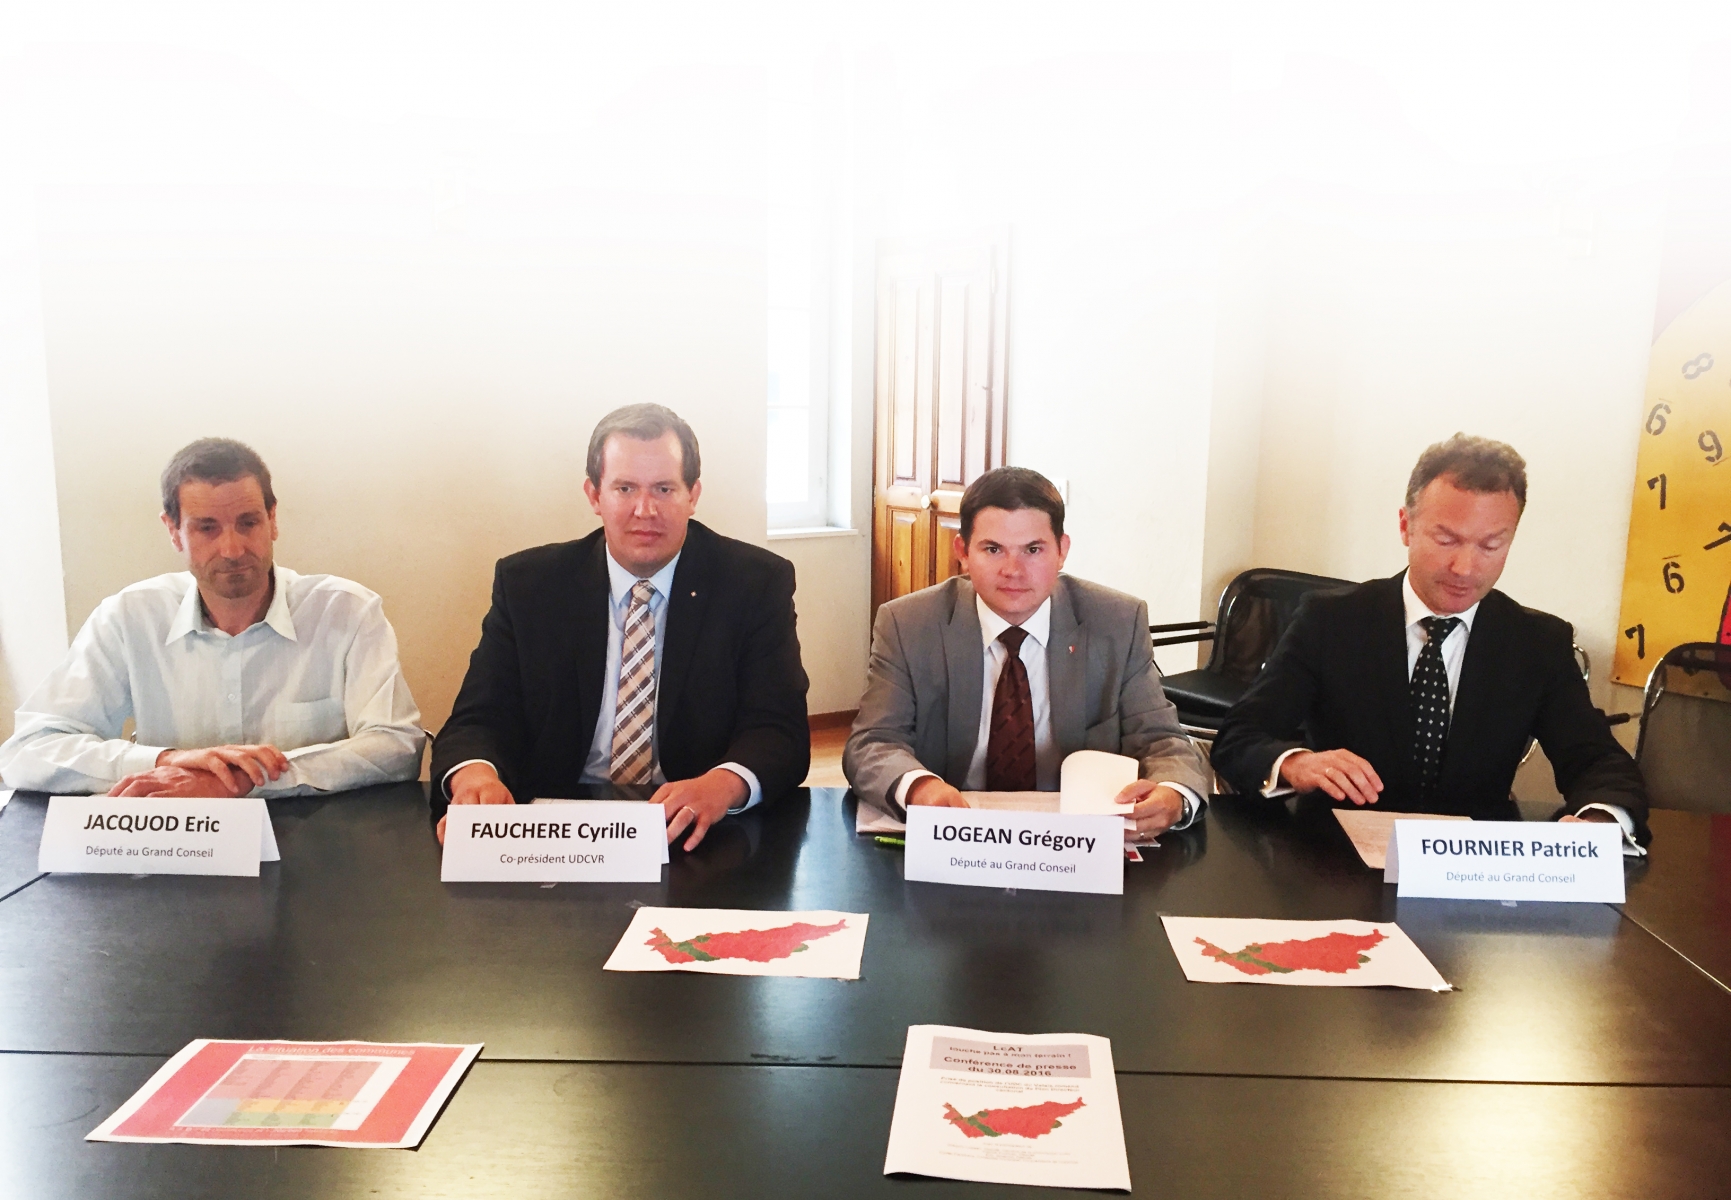 De gauche à droite: Eric Jacquod, Cyrille Fauchère, Grégory Logean et Patrick Fournier, remontés contre le projet de plan directeur cantonal.